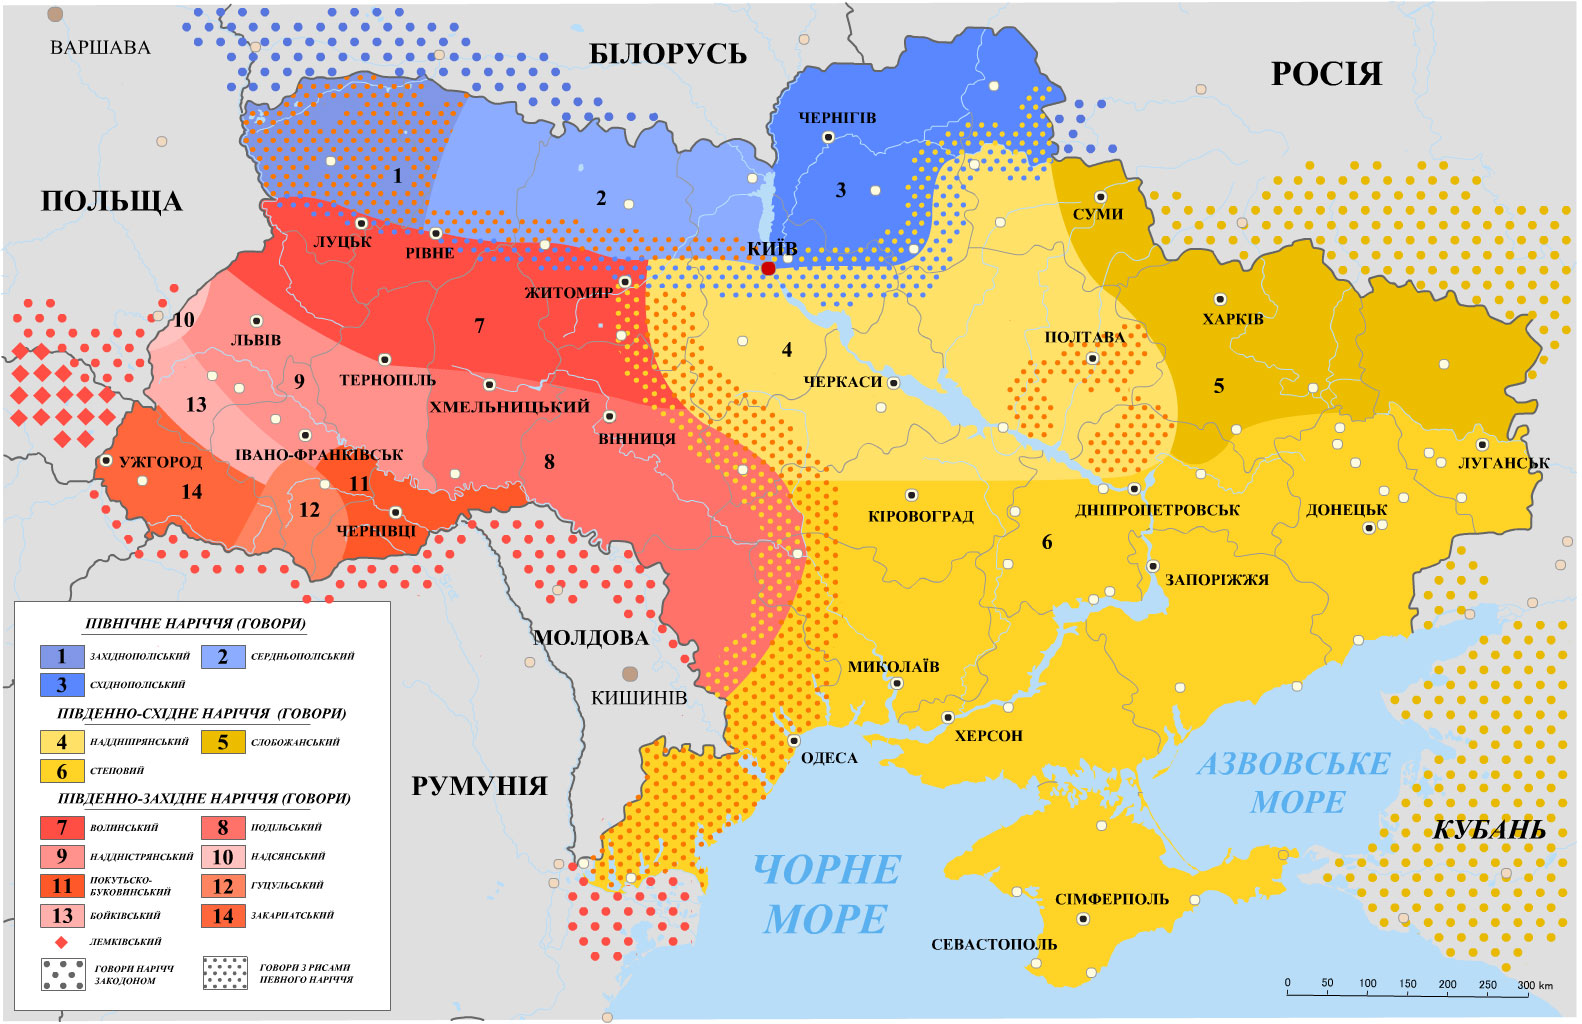 Языковая карта регионов Укрианы